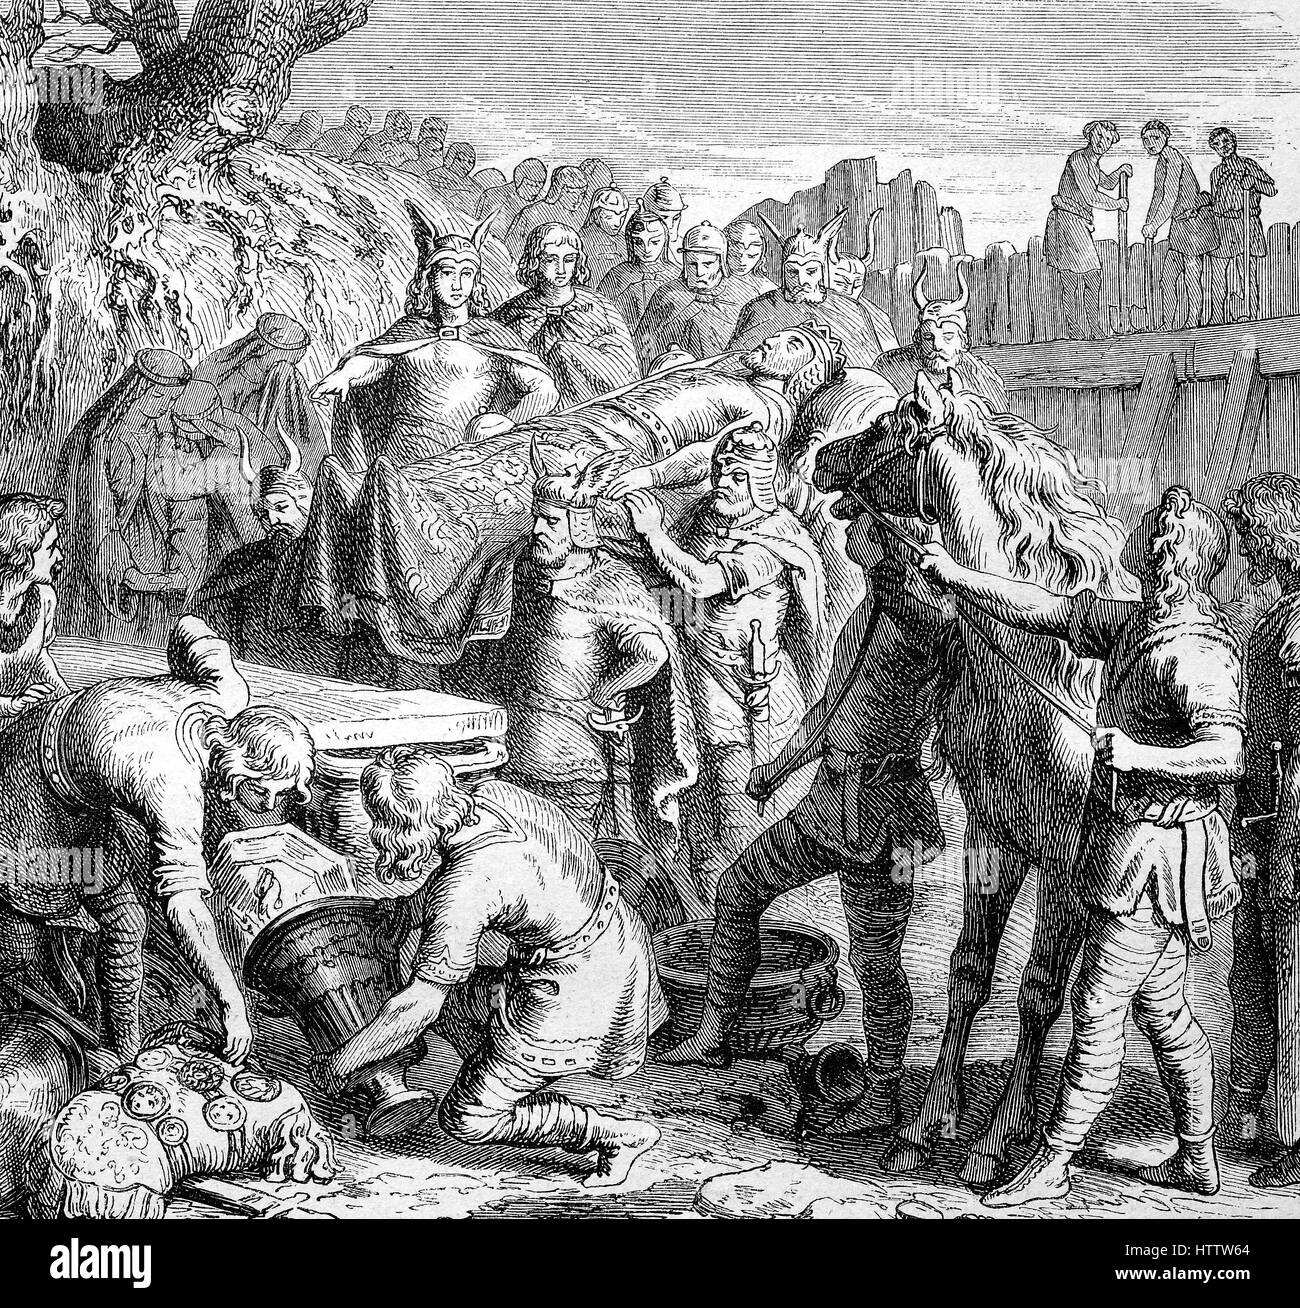 Das Begräbnis des westgotischen König Alarich, 370-410, im Flussbett des Busento, Italien, Reproduktion von einem Holzschnitt aus dem Jahr 1882, digital verbessert Stockfoto